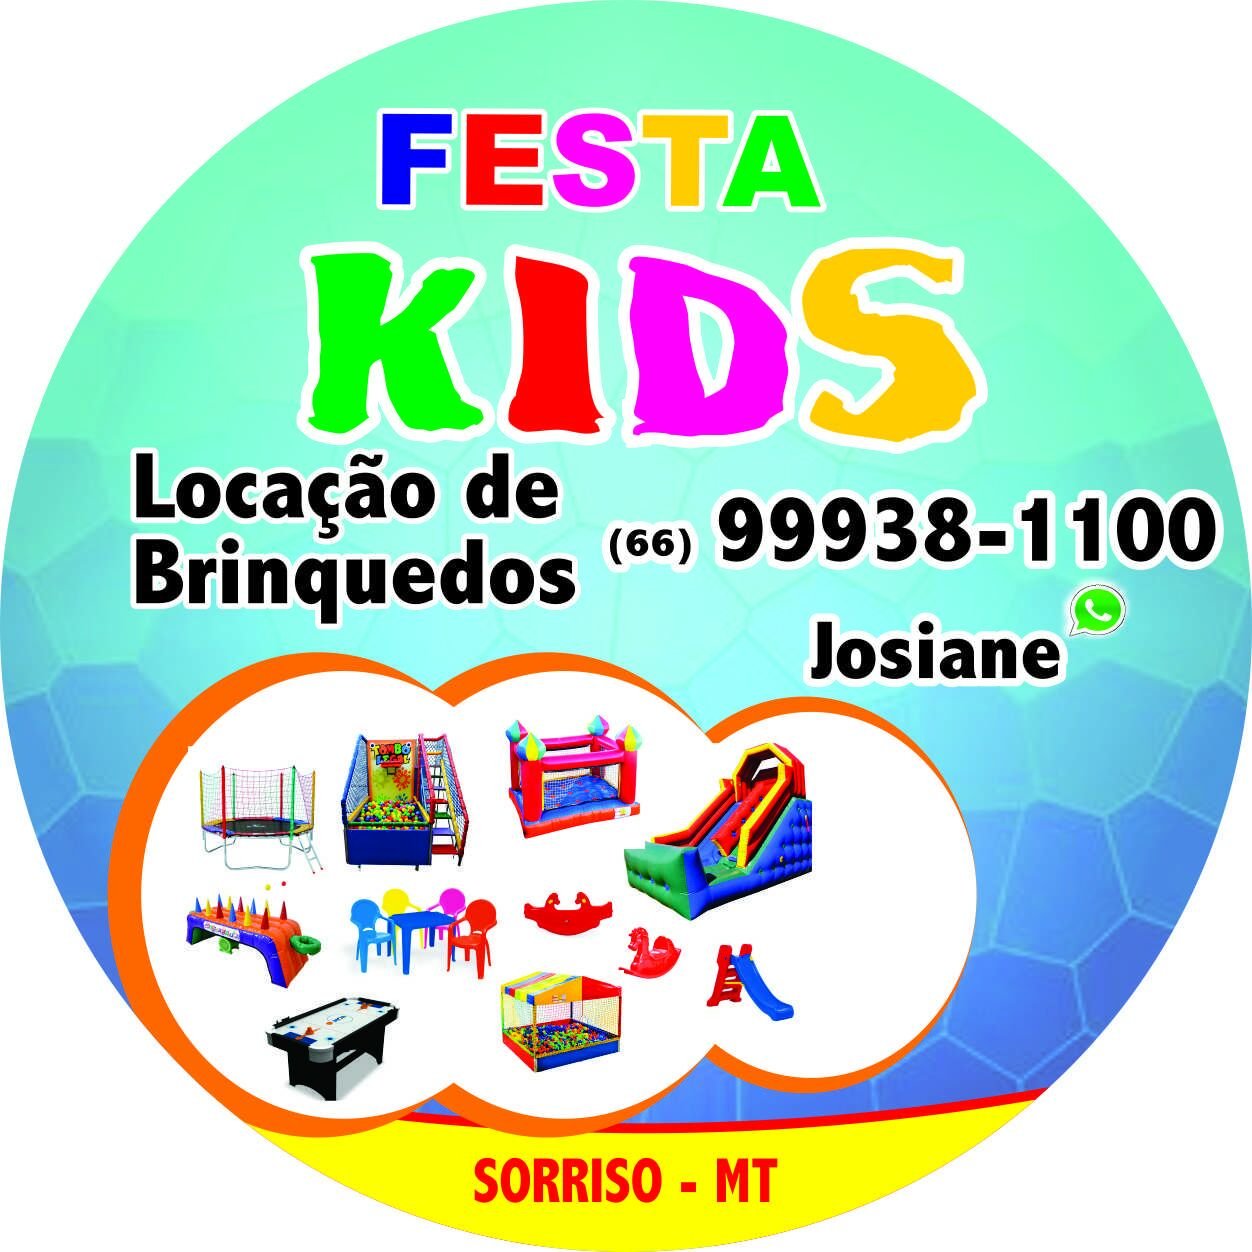 Festa Kids